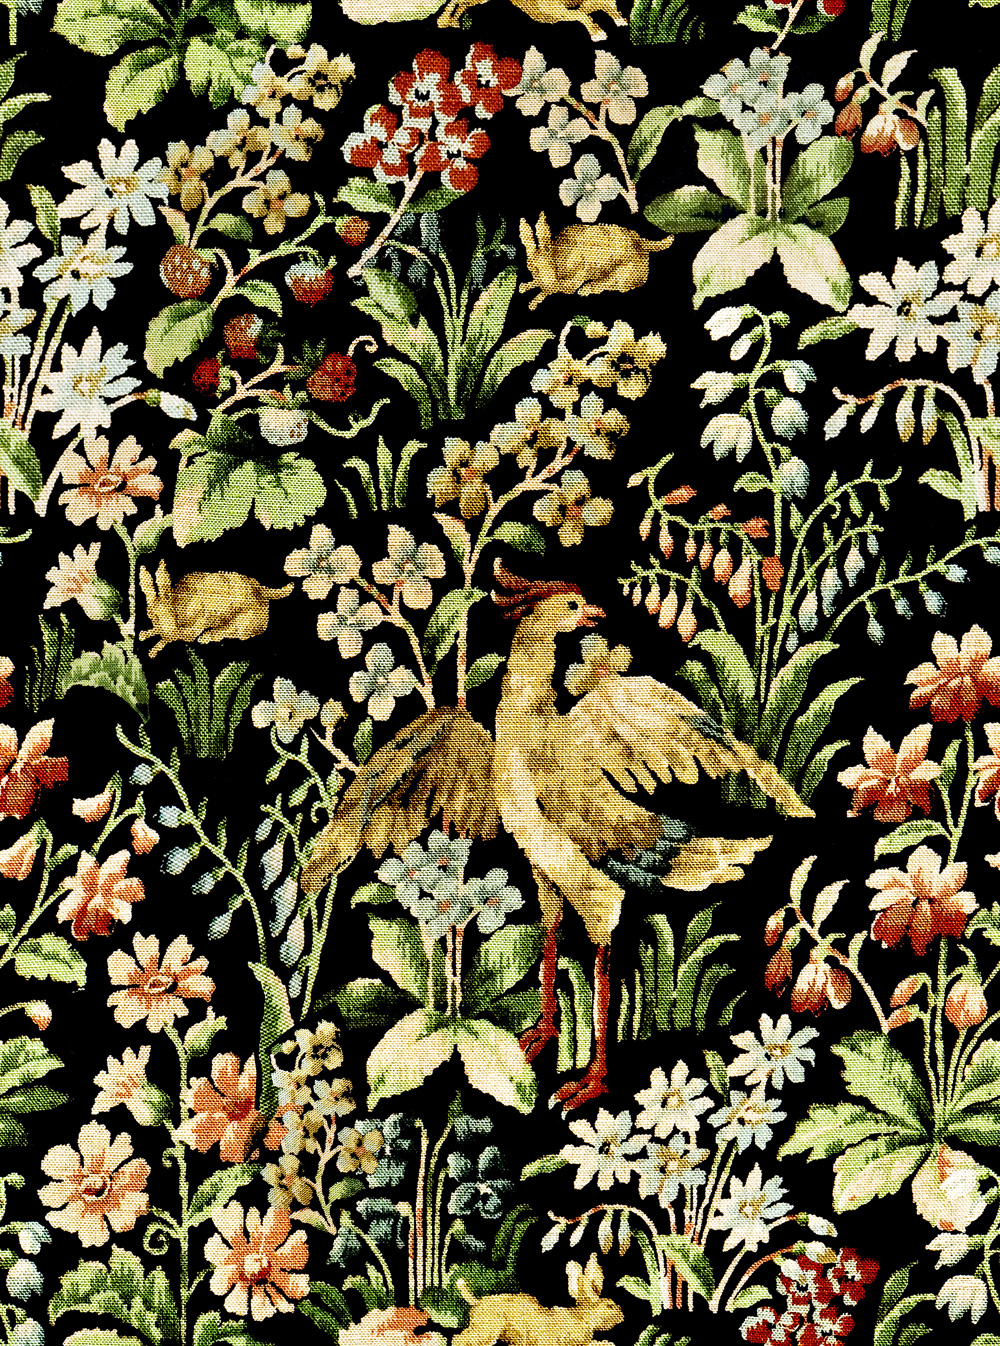 Tapet designer World Culture Floral Tapestry, MINDTHEGAP